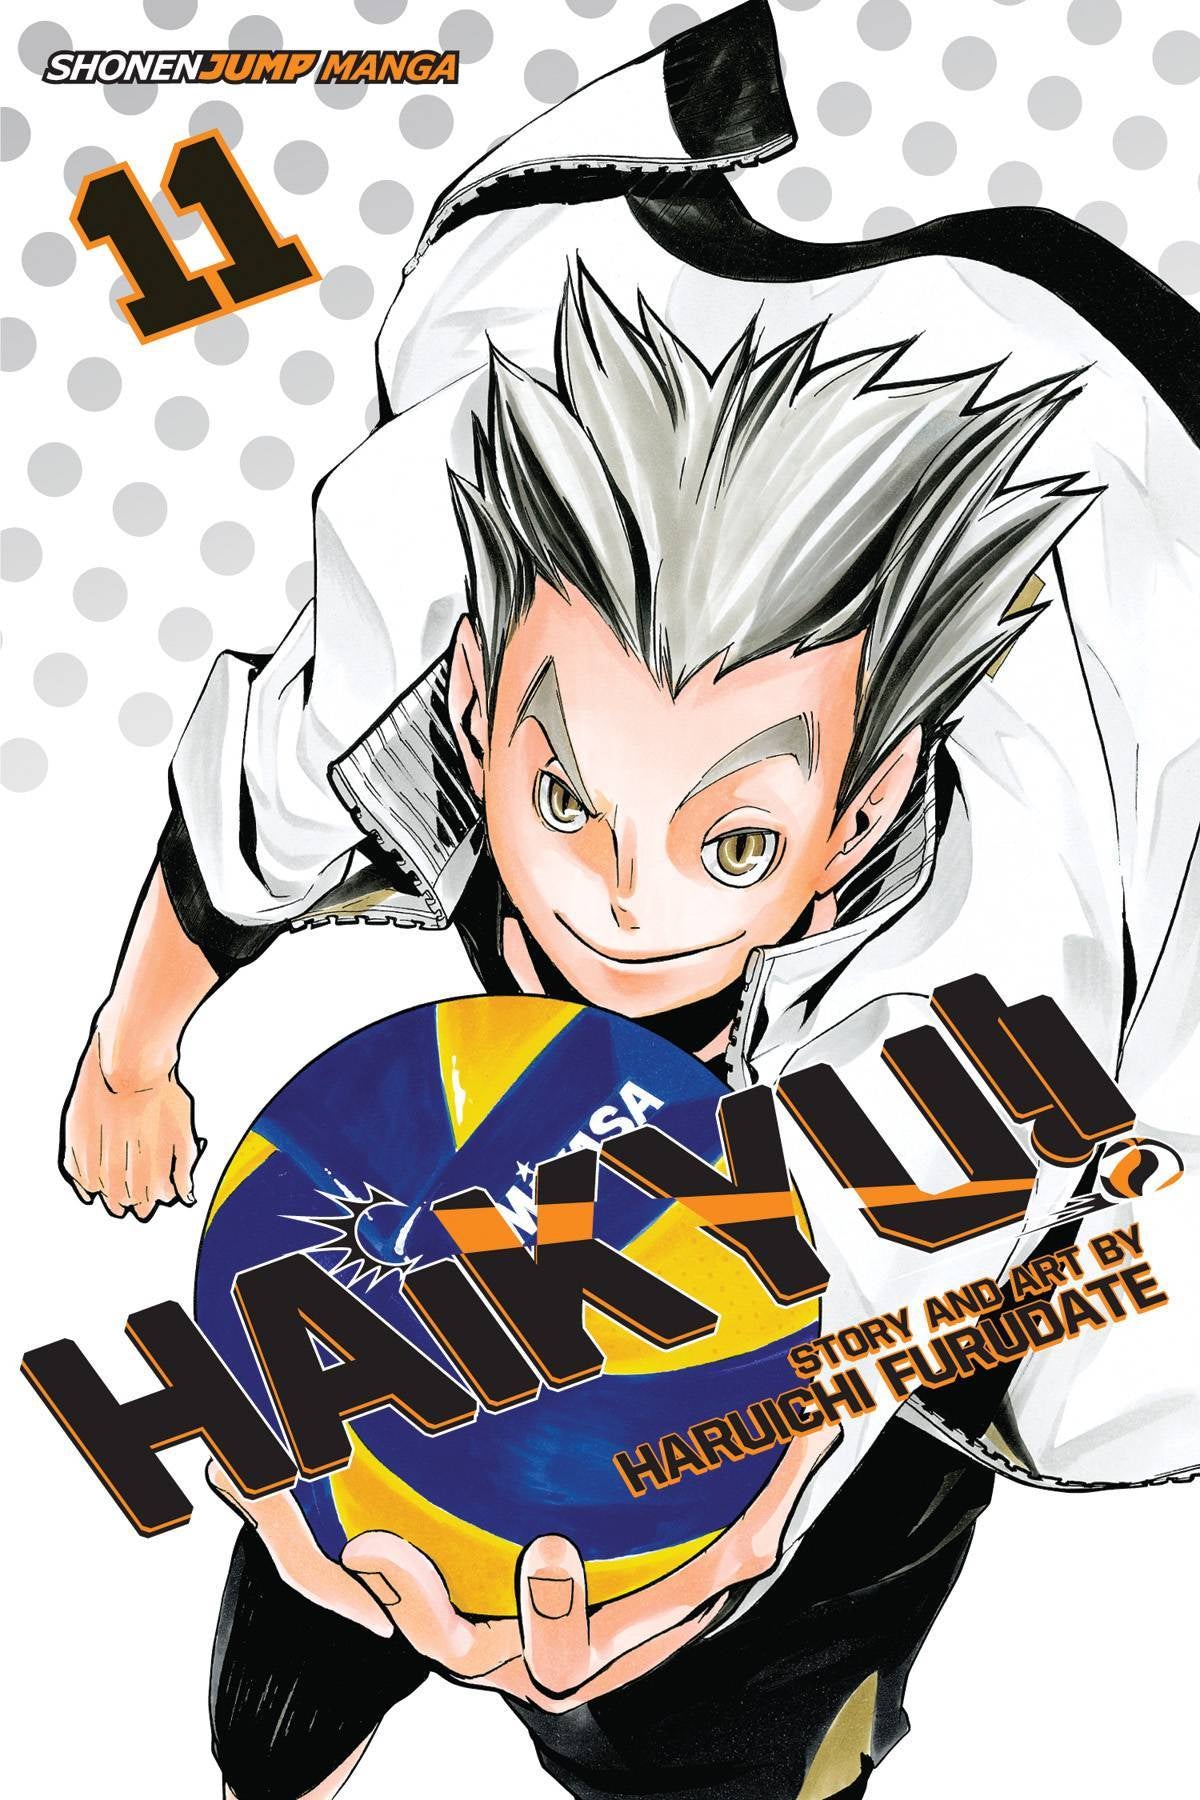 HAIKYU VOLUME 11